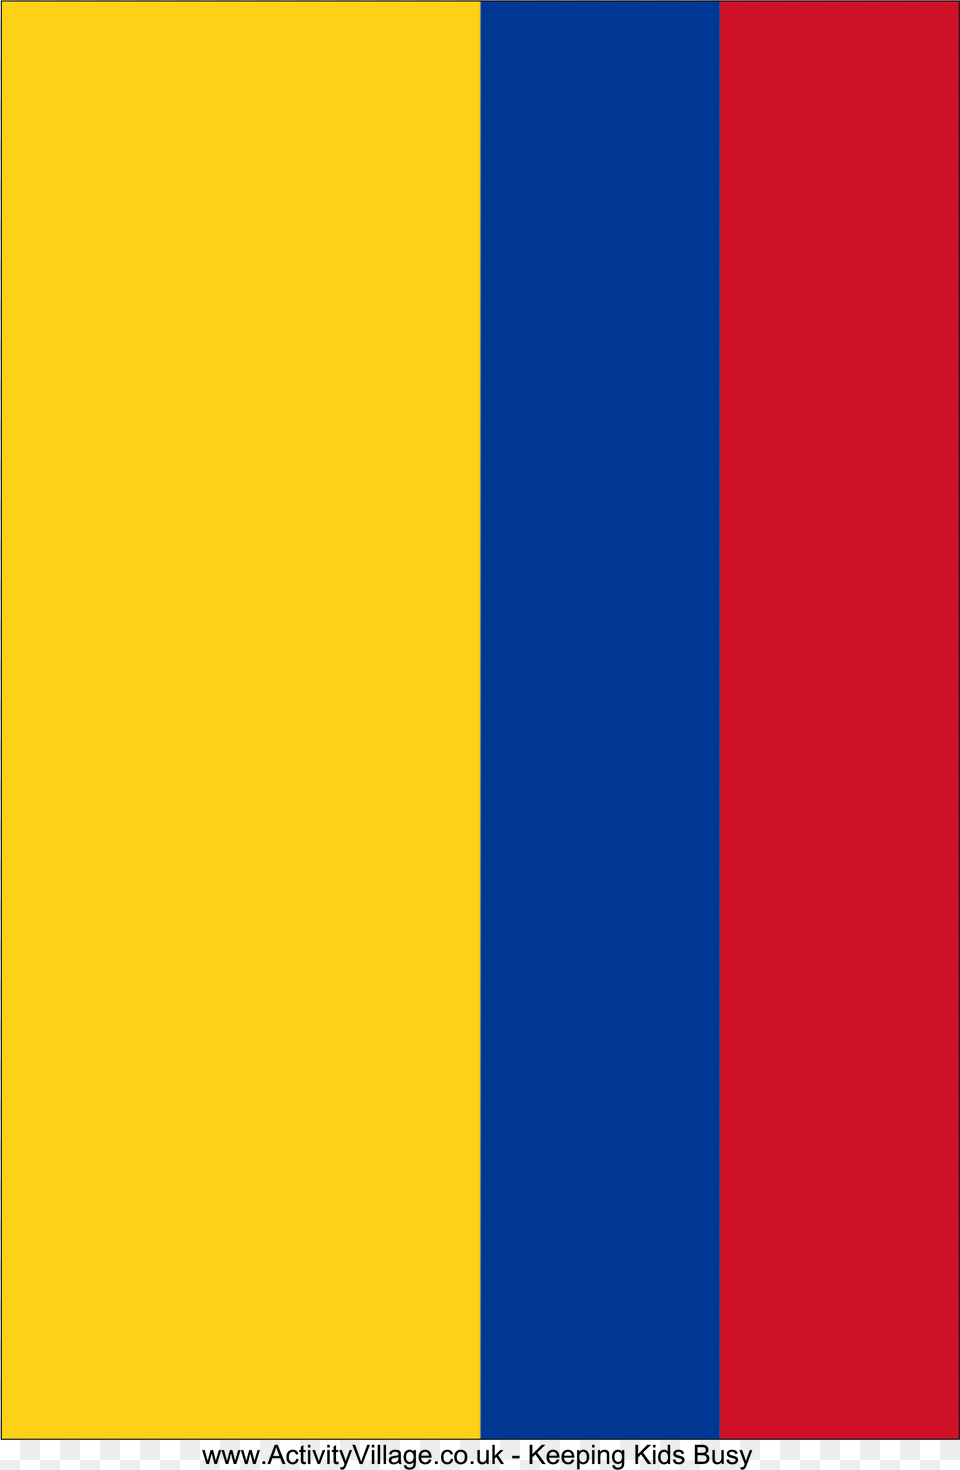 Free Printable Colombia Flag Imagen Bandera De Colombia Para Imprimir Png Image